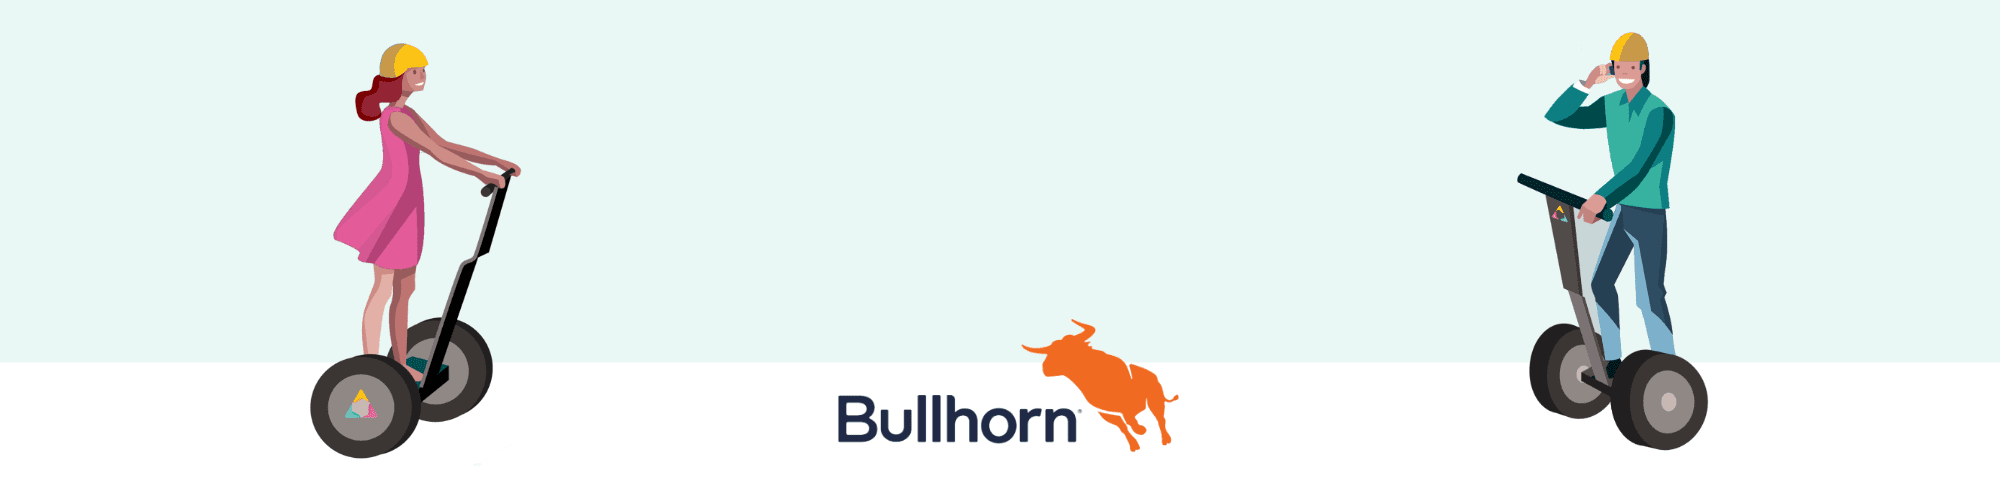 bullhorn-training-tips-for-recruiters